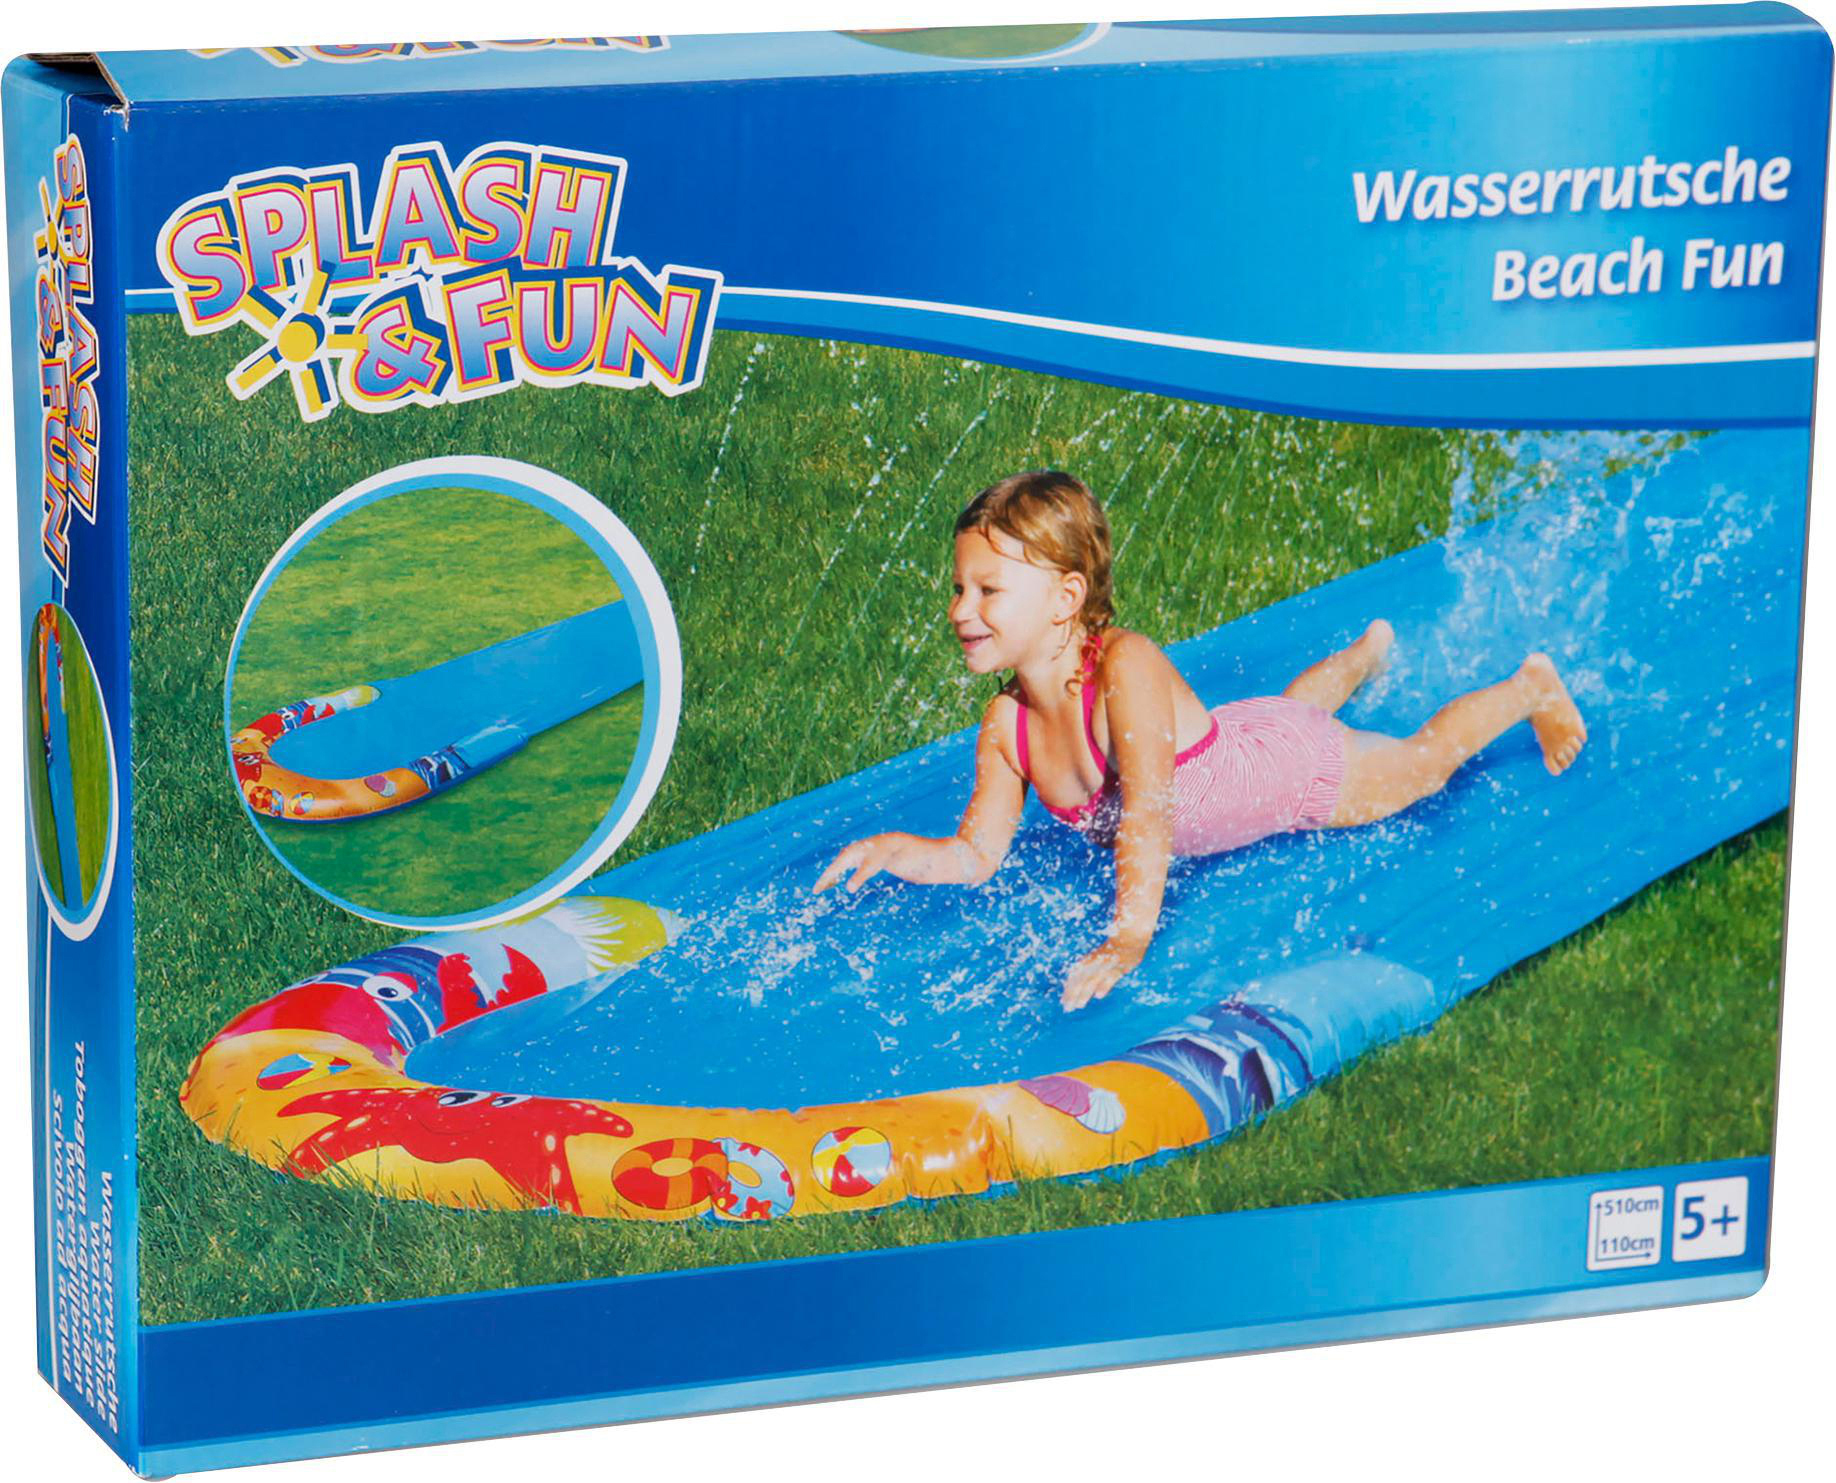 SPLASH FUN SF Wasserrutsche Wasserspielzeug Beach cm 510 Mehrfarbig 110 x Fun